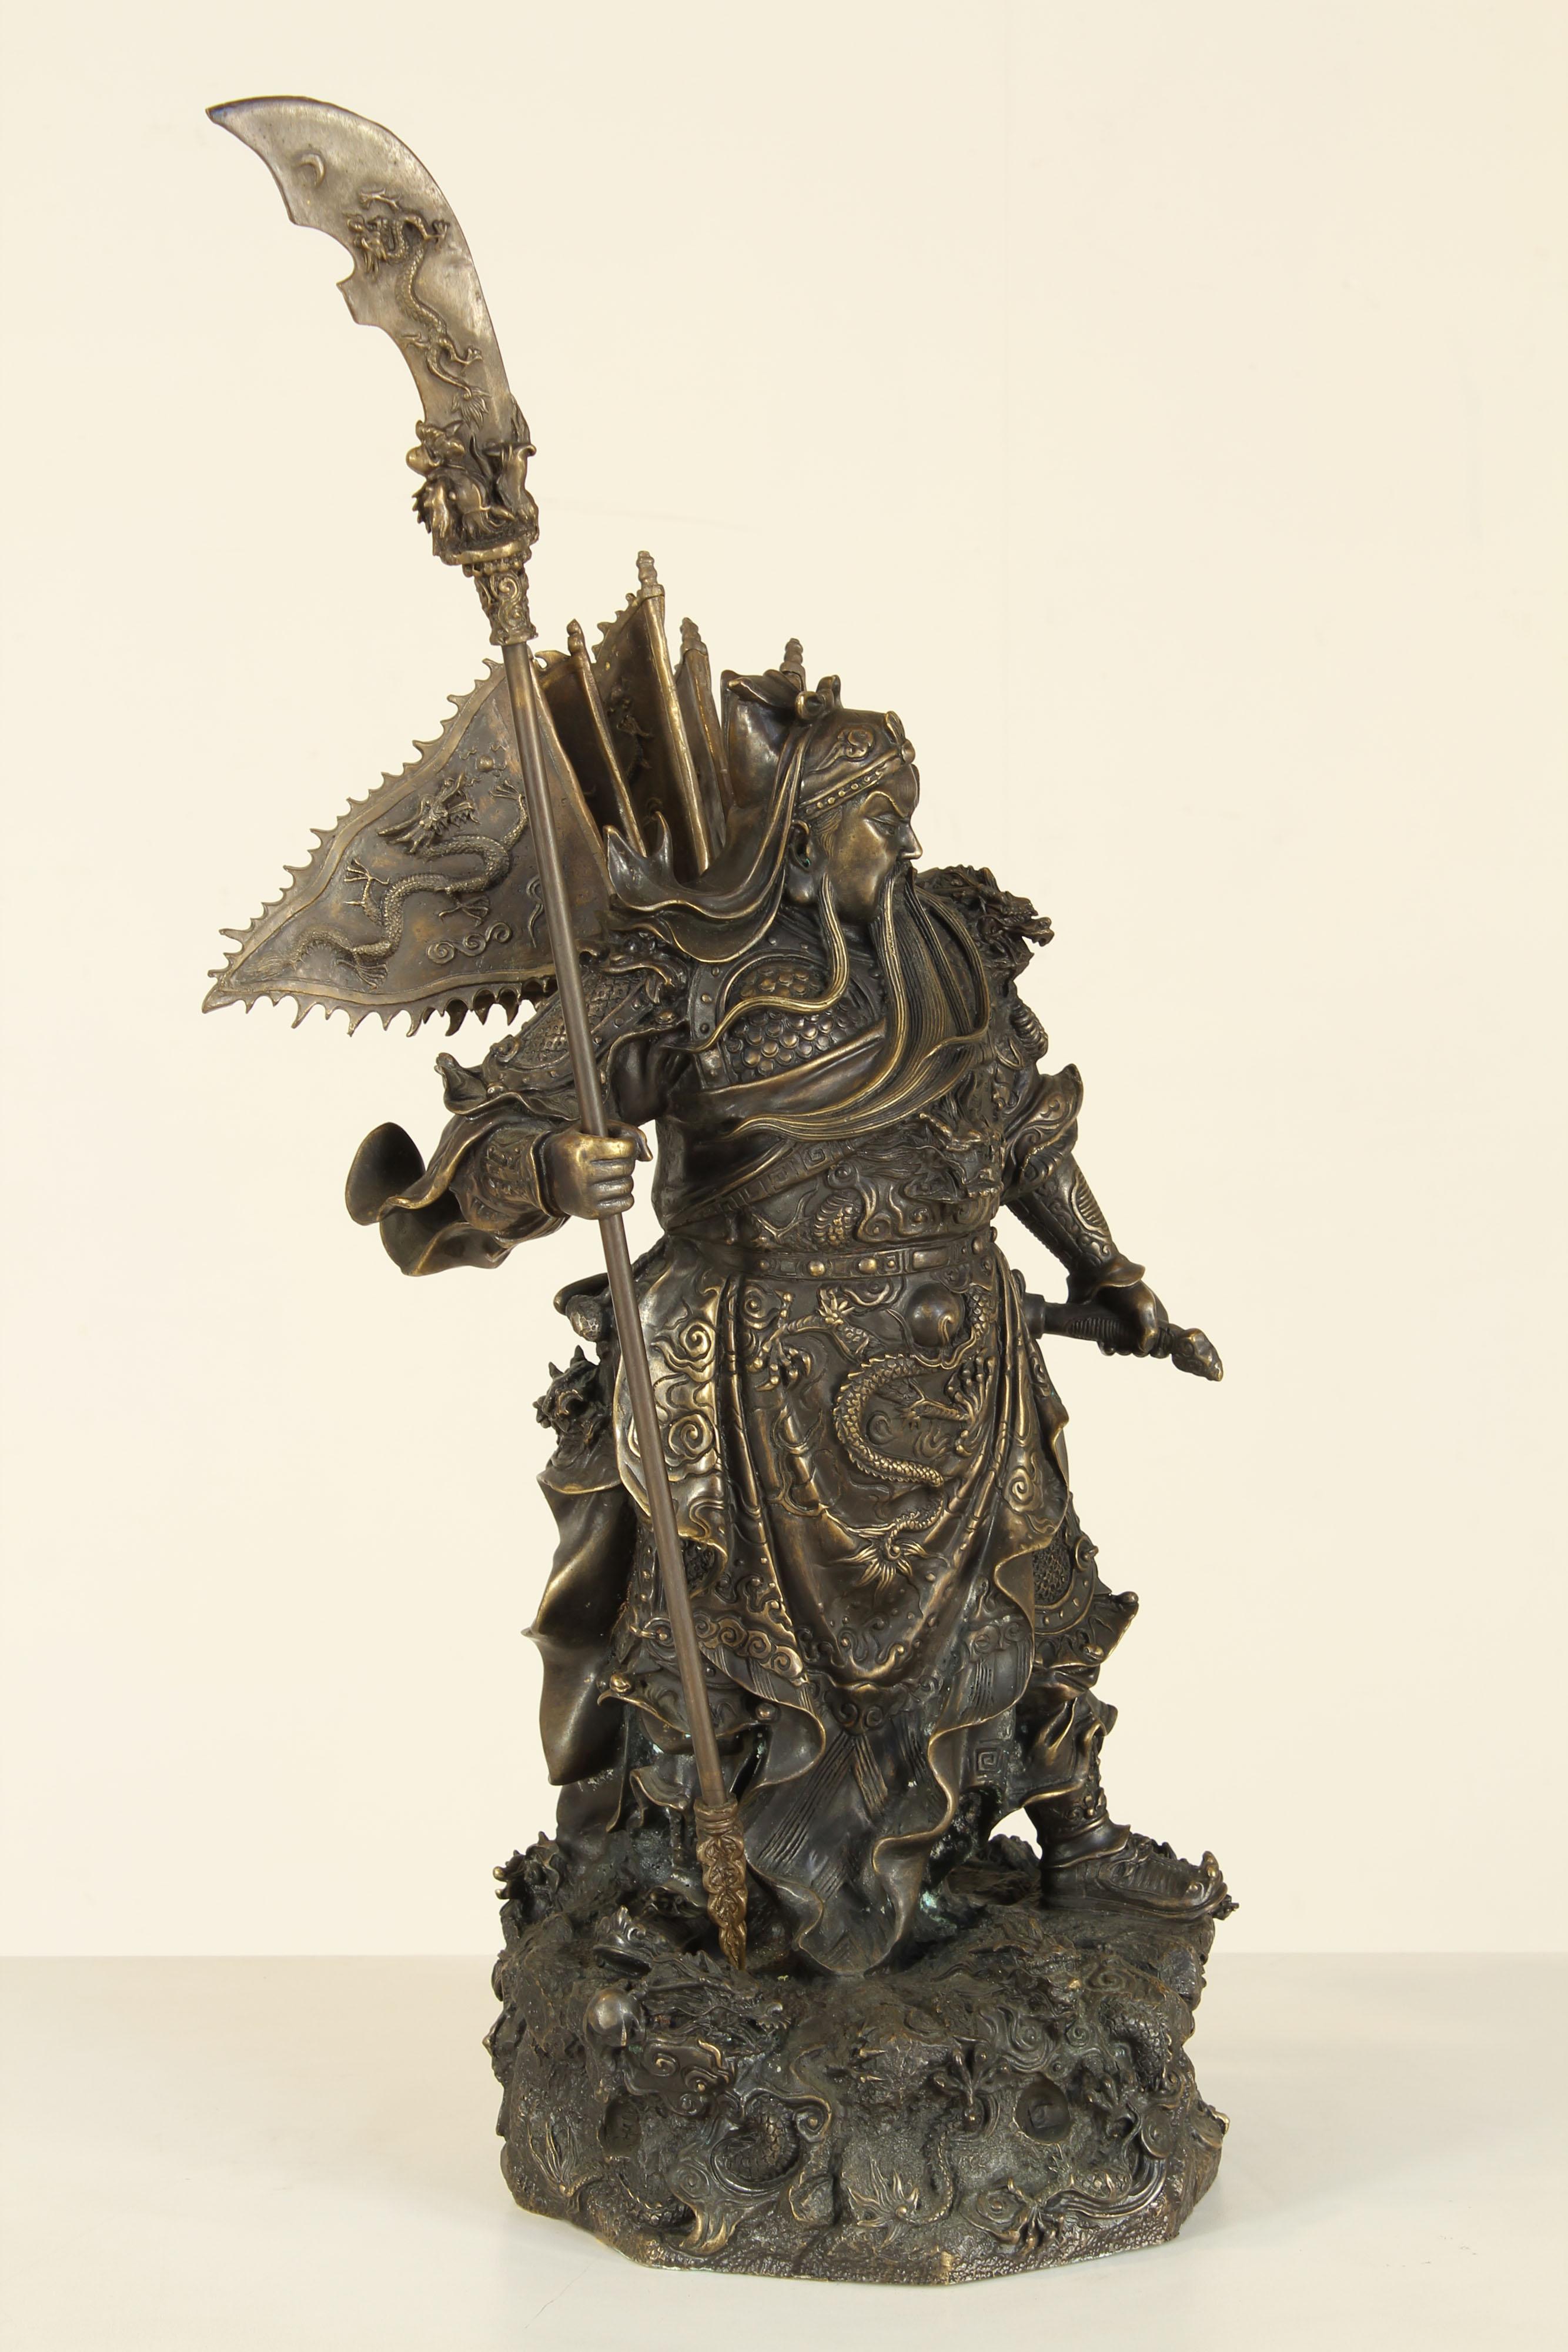 Sculpture imposante représentant le Dieu de la guerre
Matériau en bronze de haute qualité et exécuté avec un incroyable savoir-faire, finement ciselé.
Auteur inconnu Japon vers 1950.
L'emballage avec du papier bulle et des boîtes en carton est